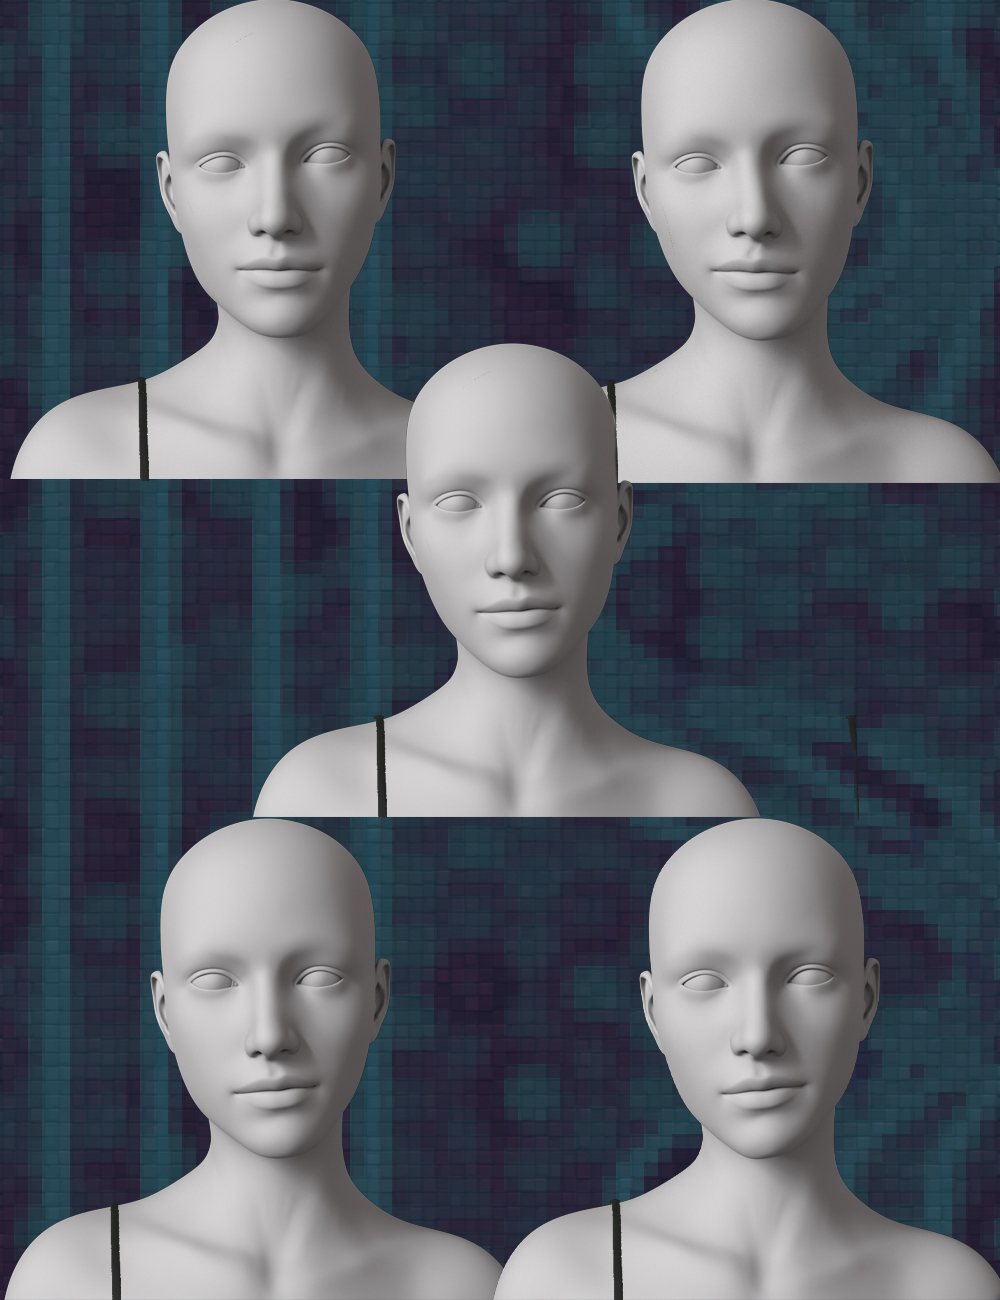 Asymmetry Merchant Resource for Genesis 8.1 Female by: PedroFurtadoArts, 3D Models by Daz 3D